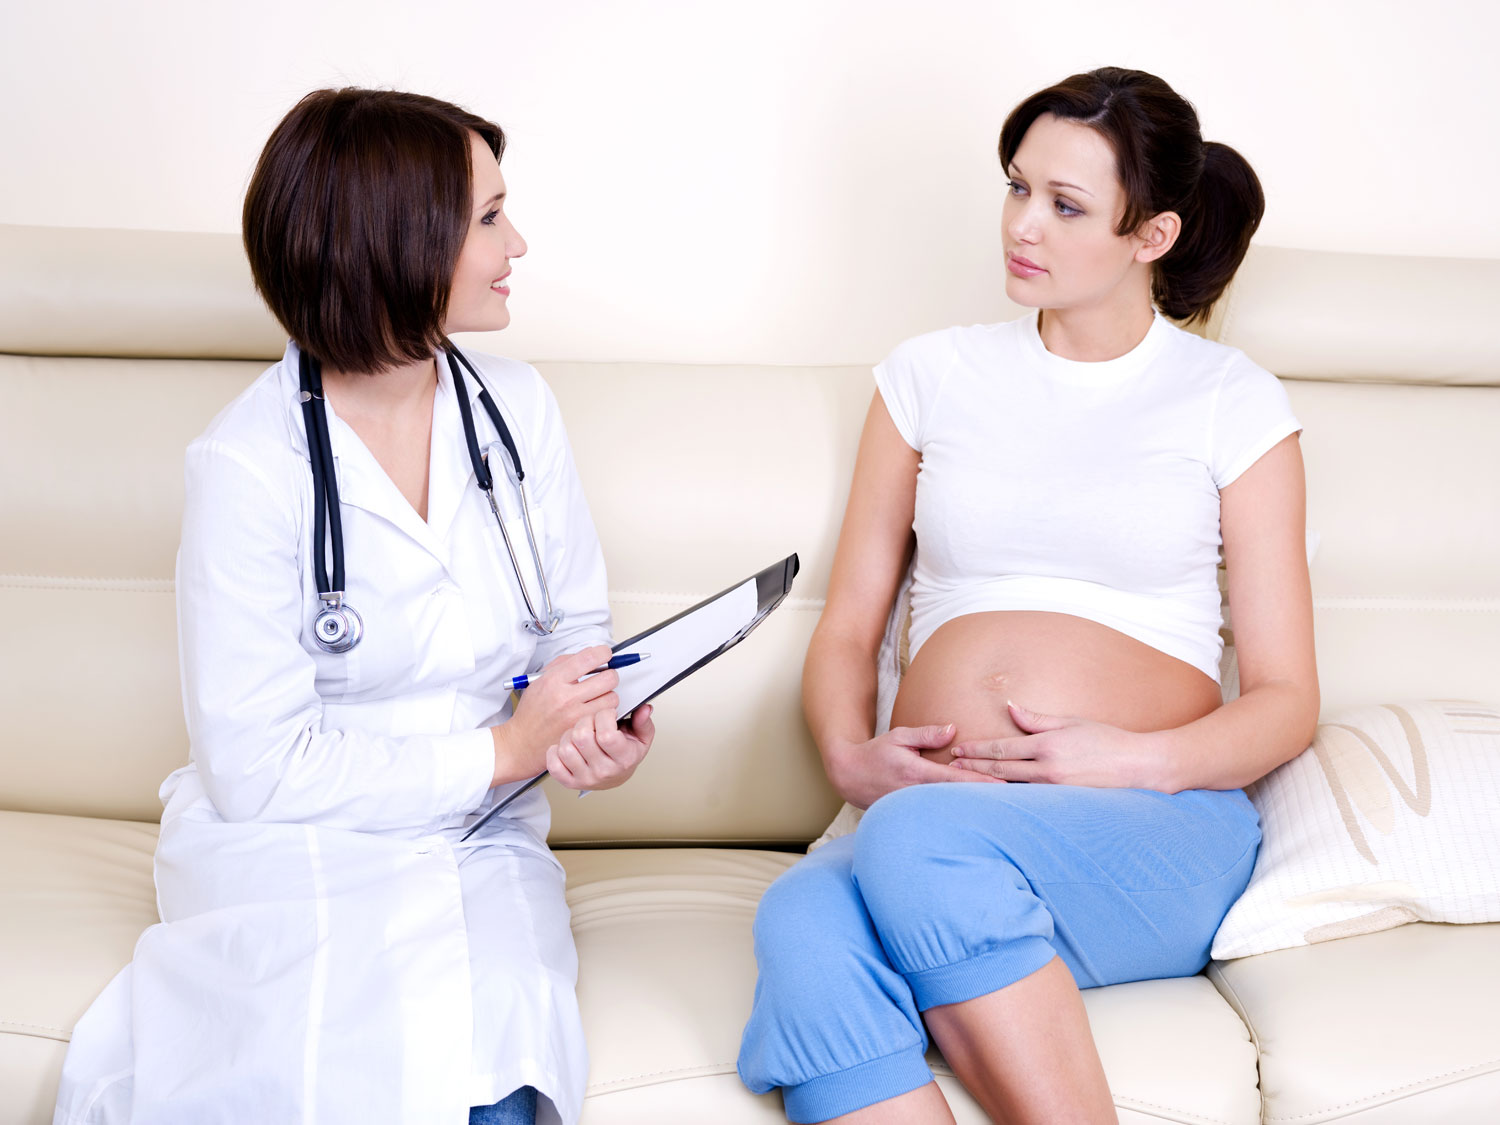 Самопроизвольное прерывание беременности (СПБ) – невынашивание беременности, итогом которого является рождение нежизнеспособного и незрелого плода на сроках до 22 недели гестационного периода.